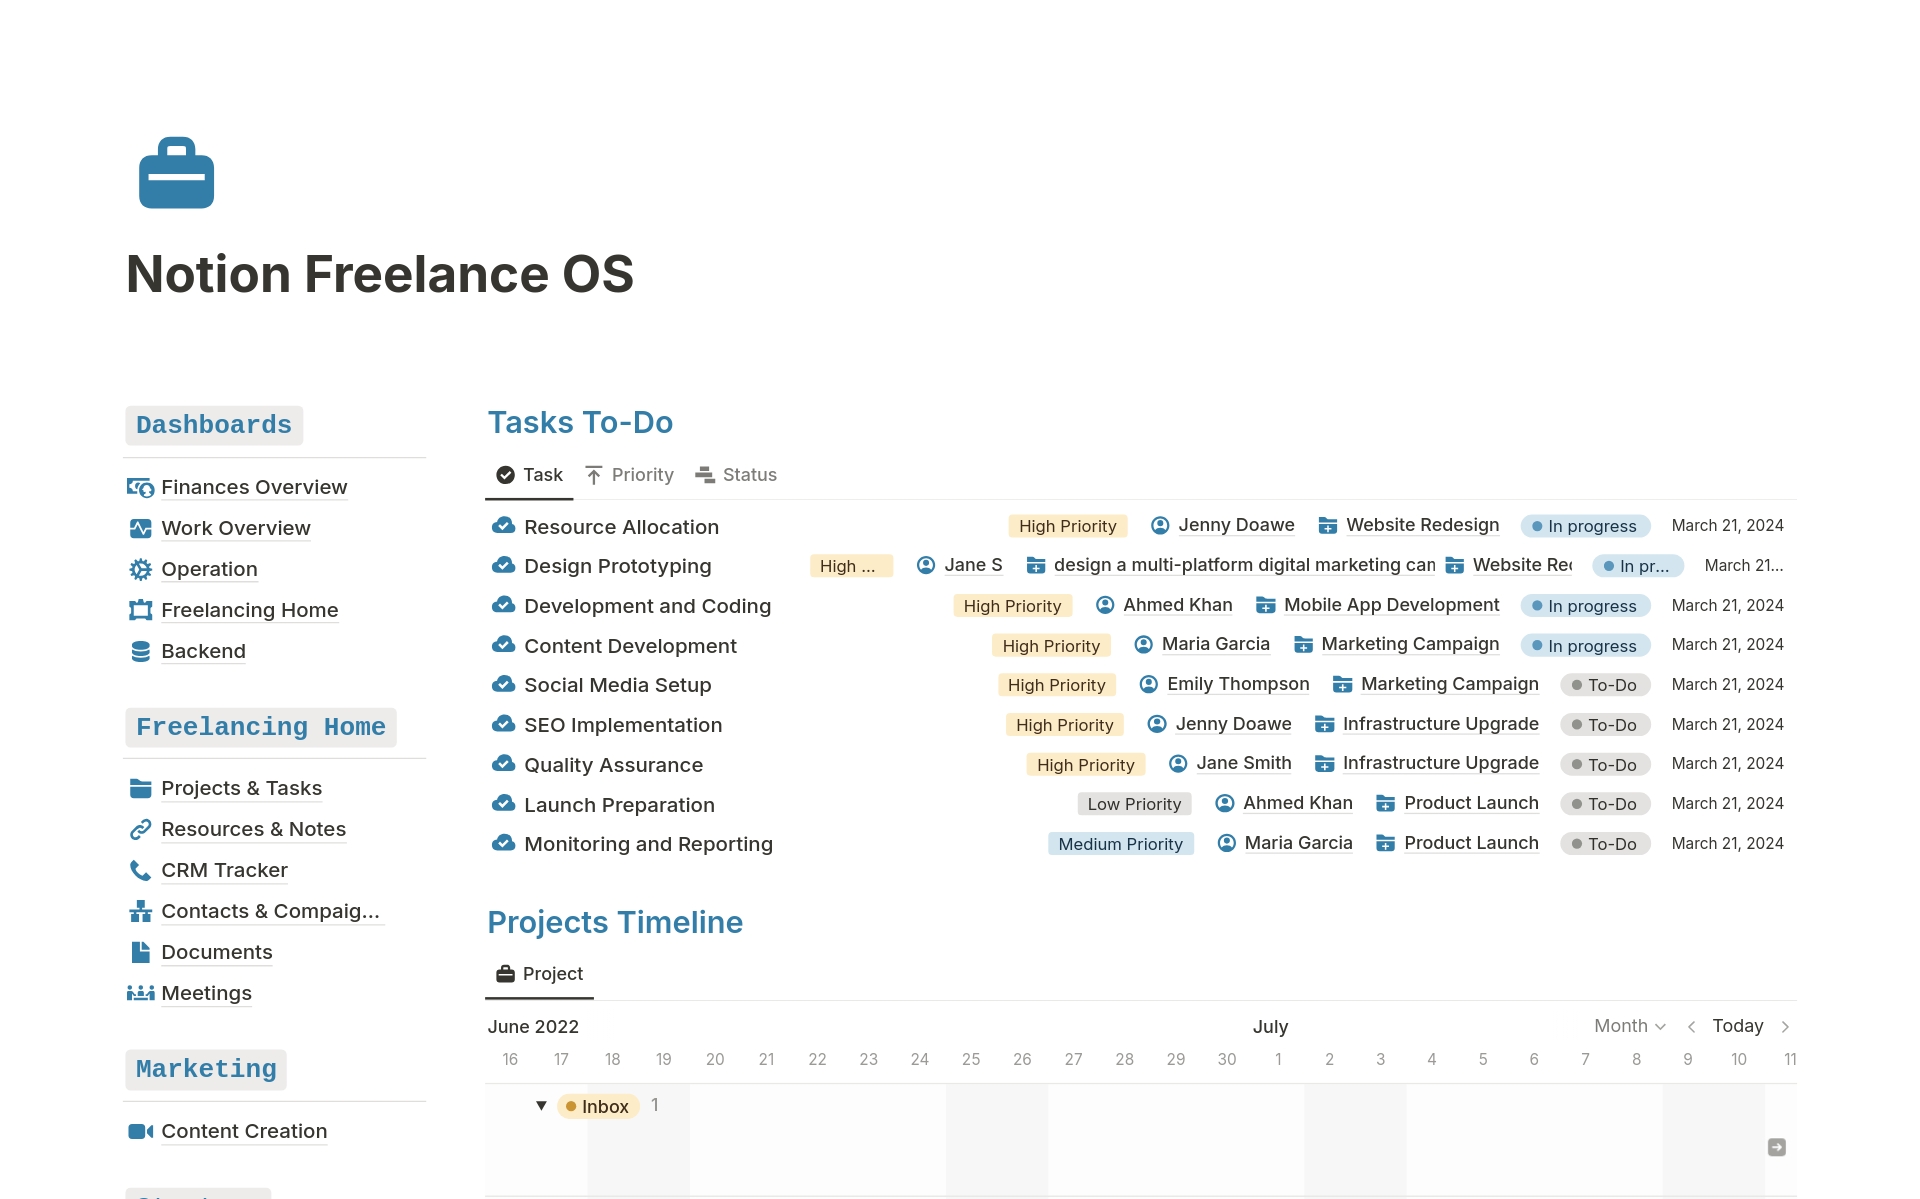 Vista previa de plantilla para Freelance OS